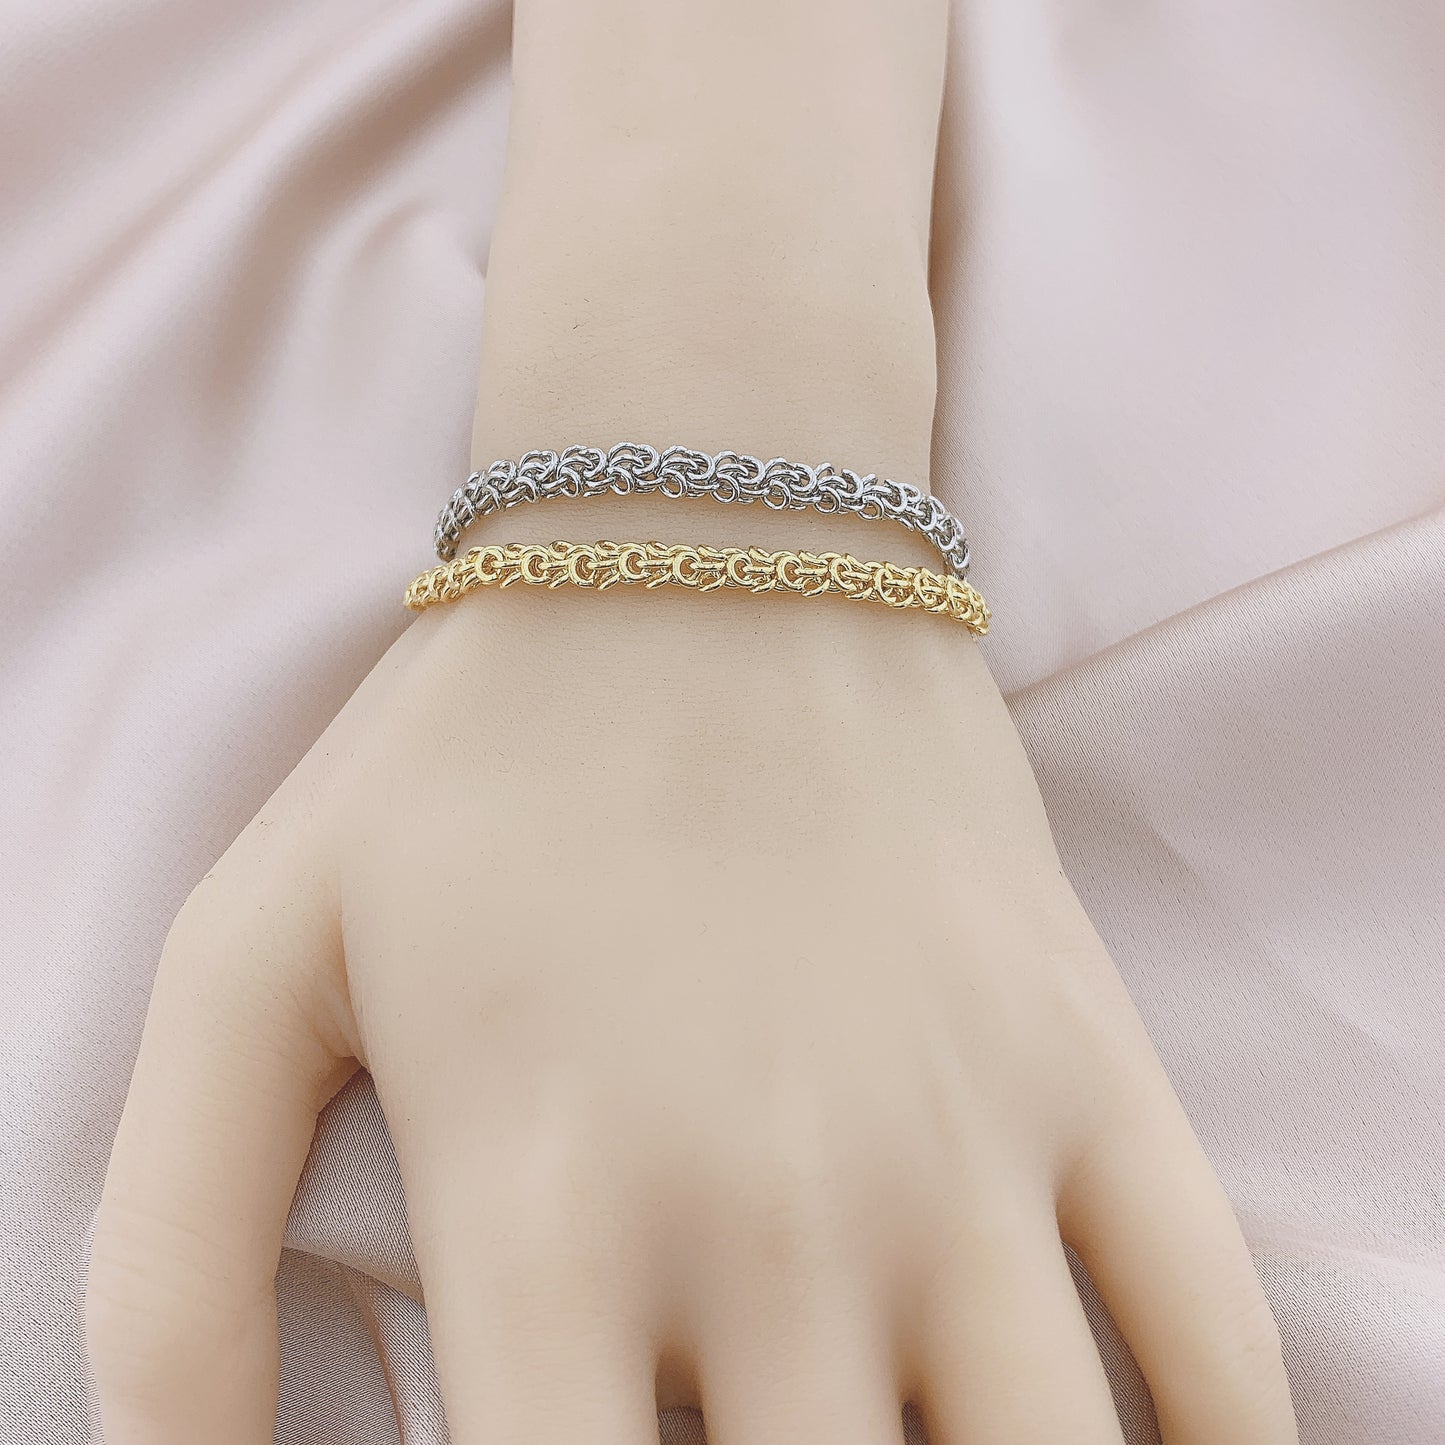 Women's Fashion Chain Bracelet